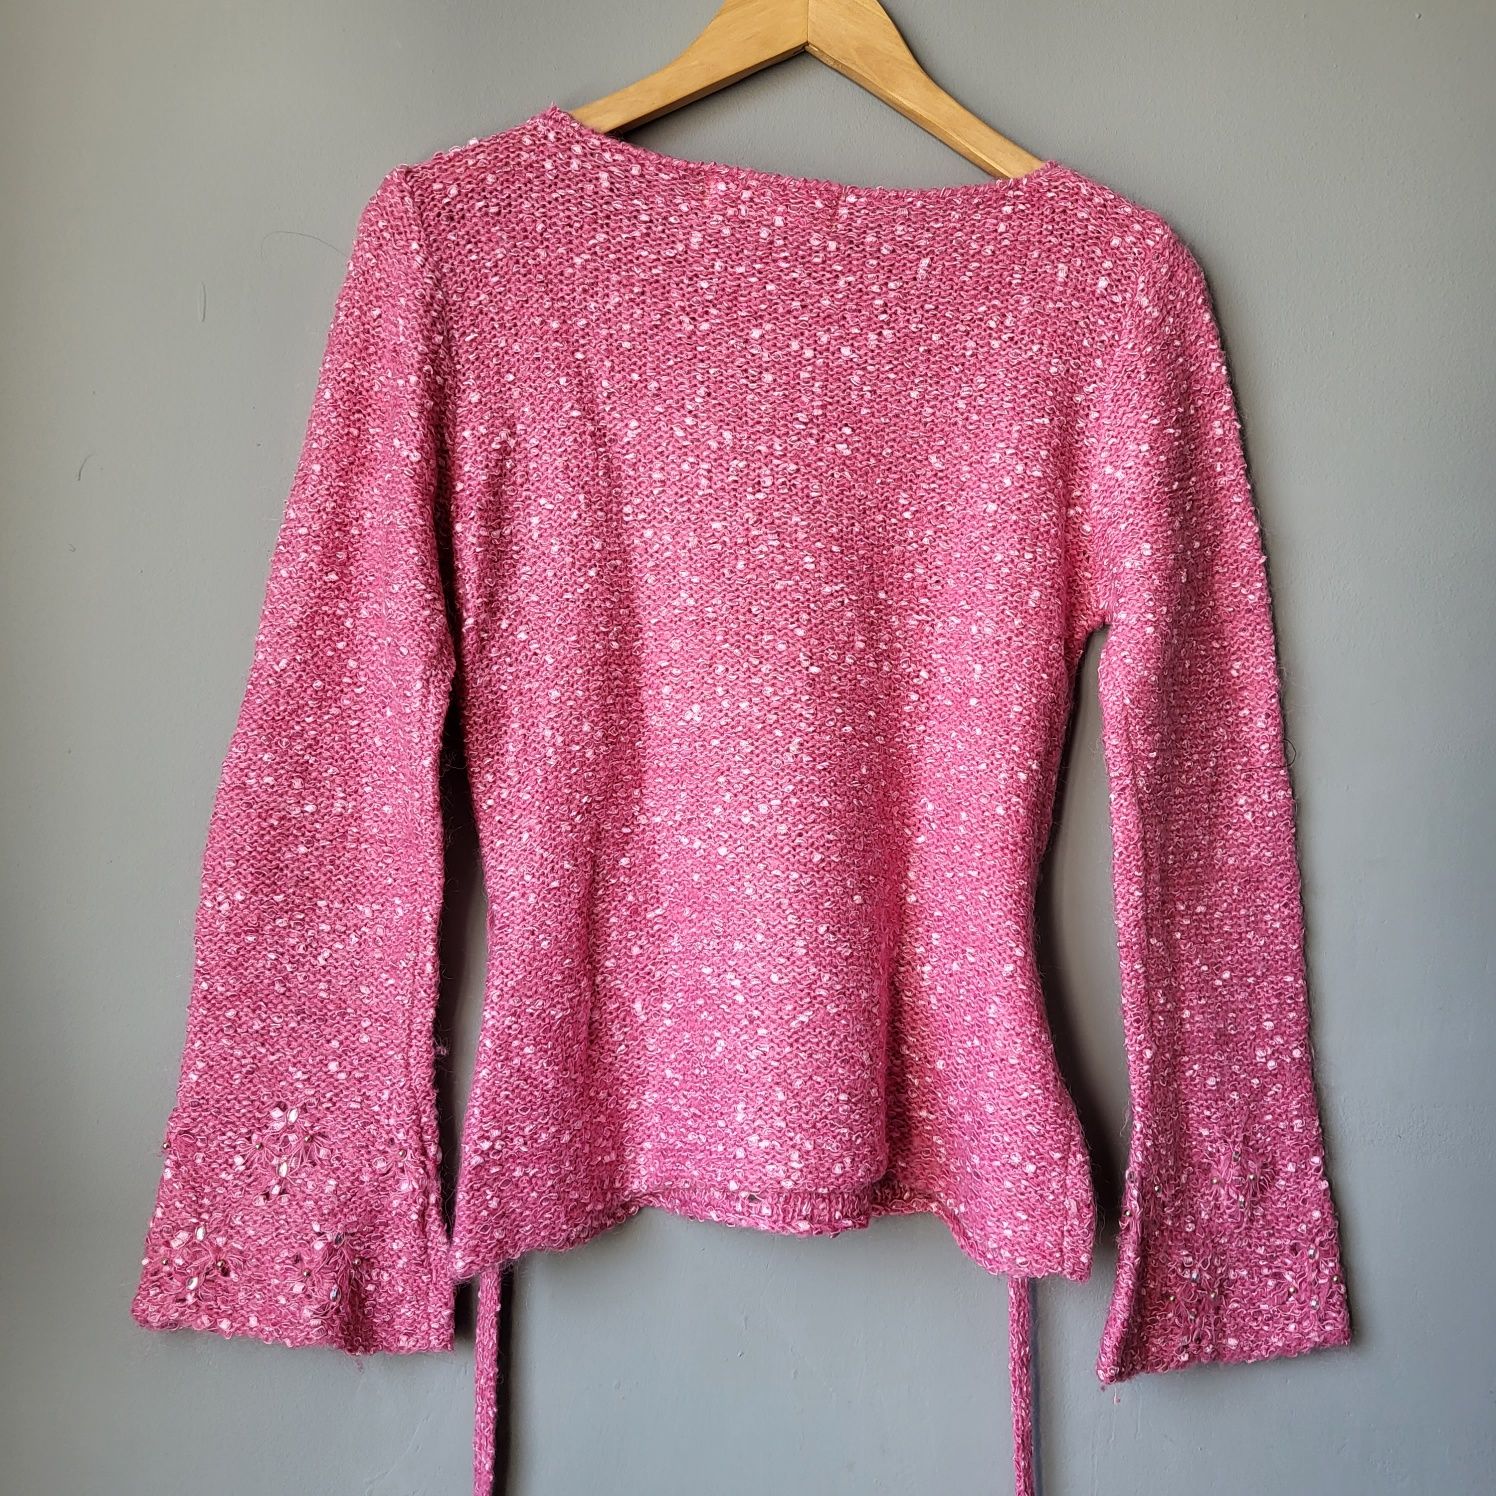 Różowy sweterek z ozdobną aplikacją i rozszerzanymi rękawami